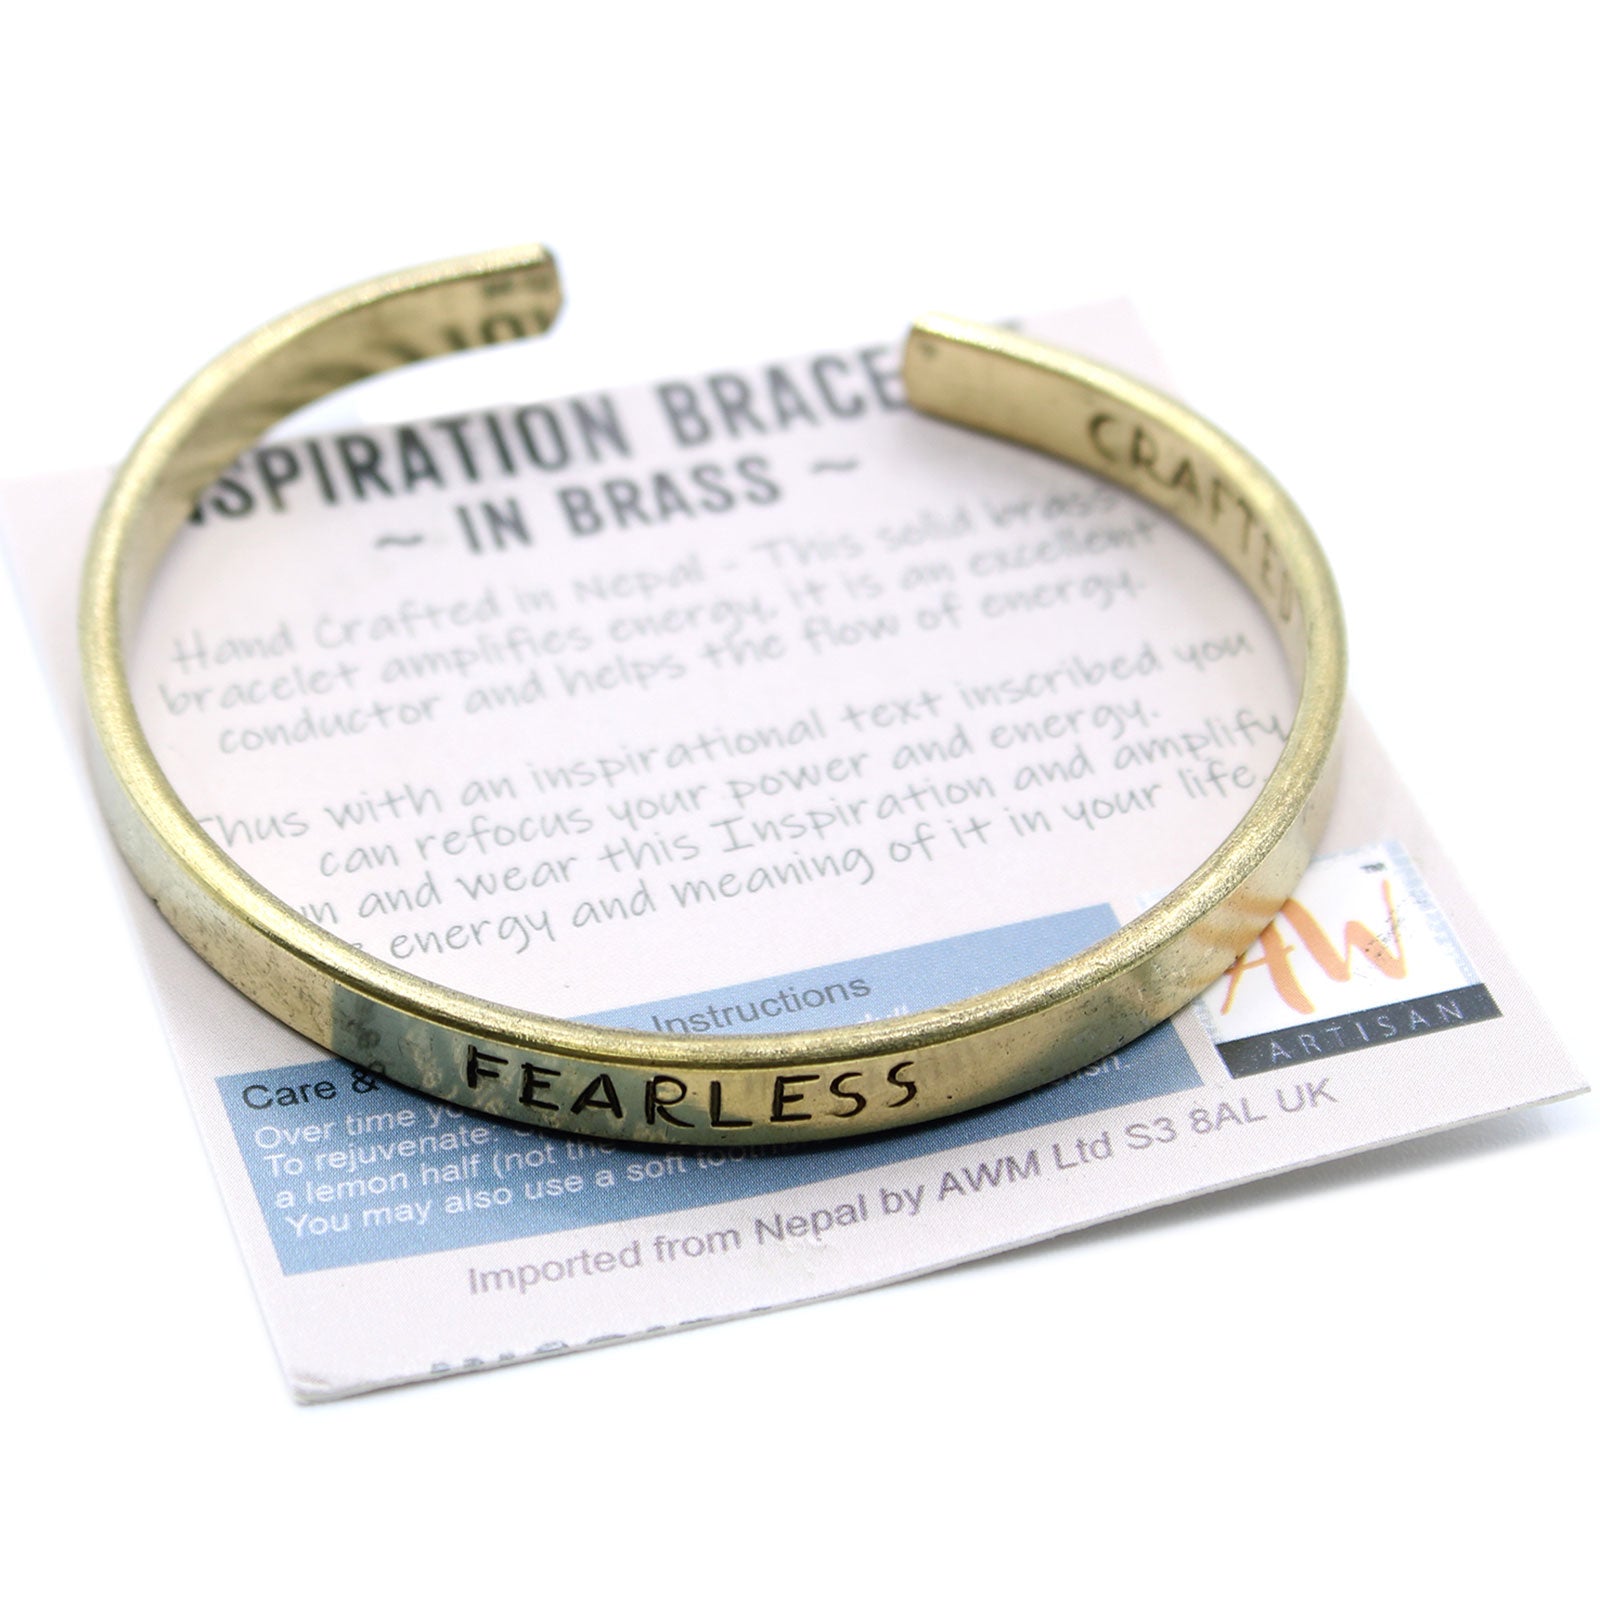 View Inspiration Bracelet Brass Selection information